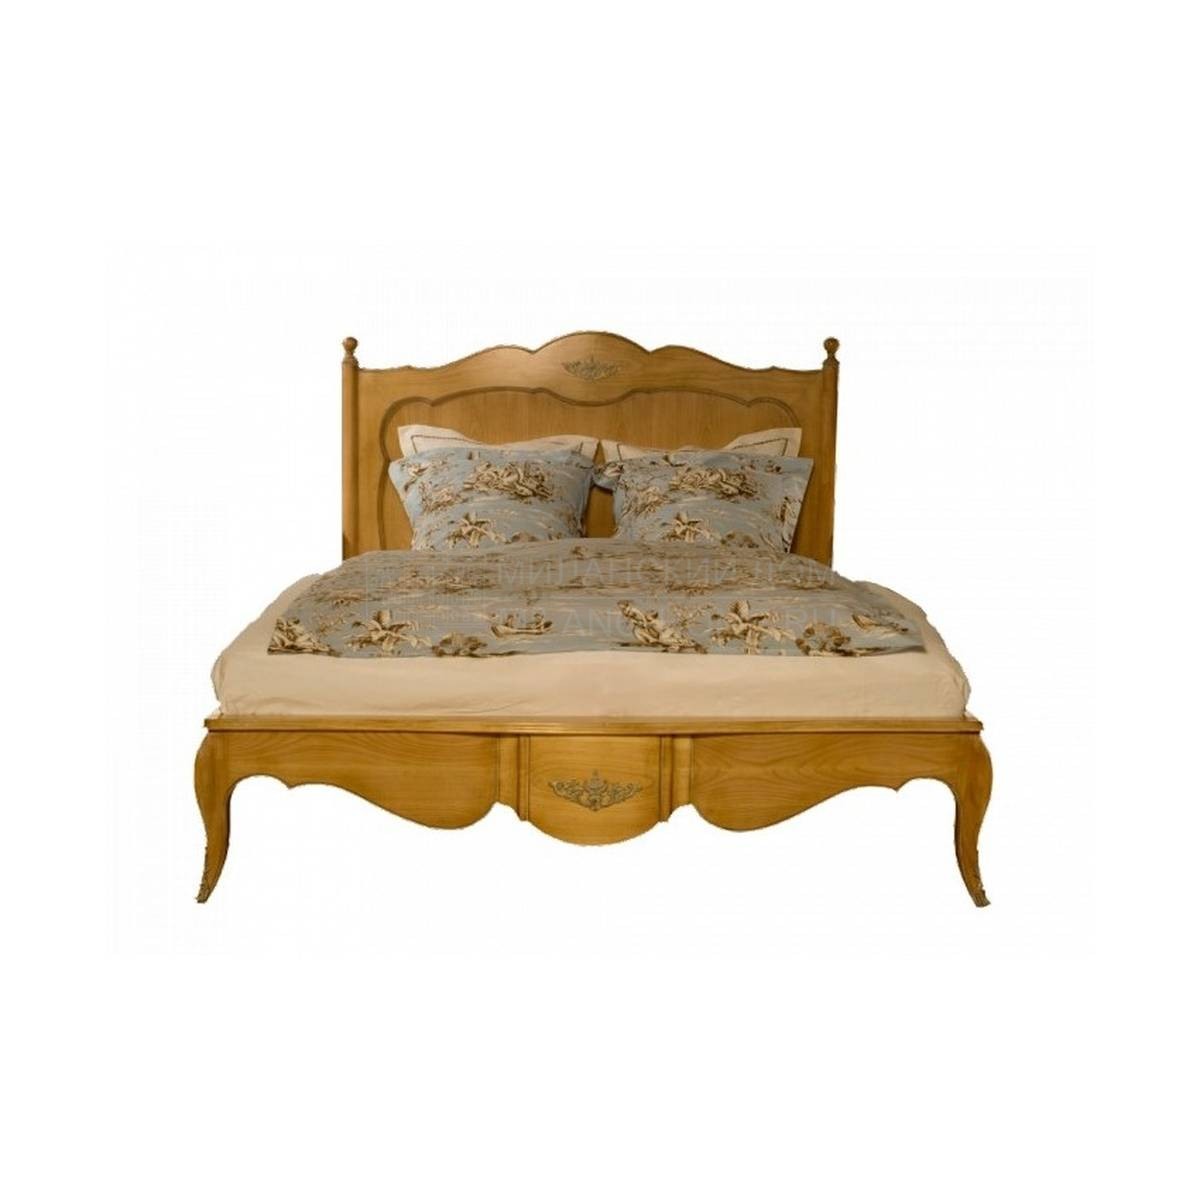 Кровать с деревянным изголовьем Maintenon / 24170 из Франции фабрики LABARERE